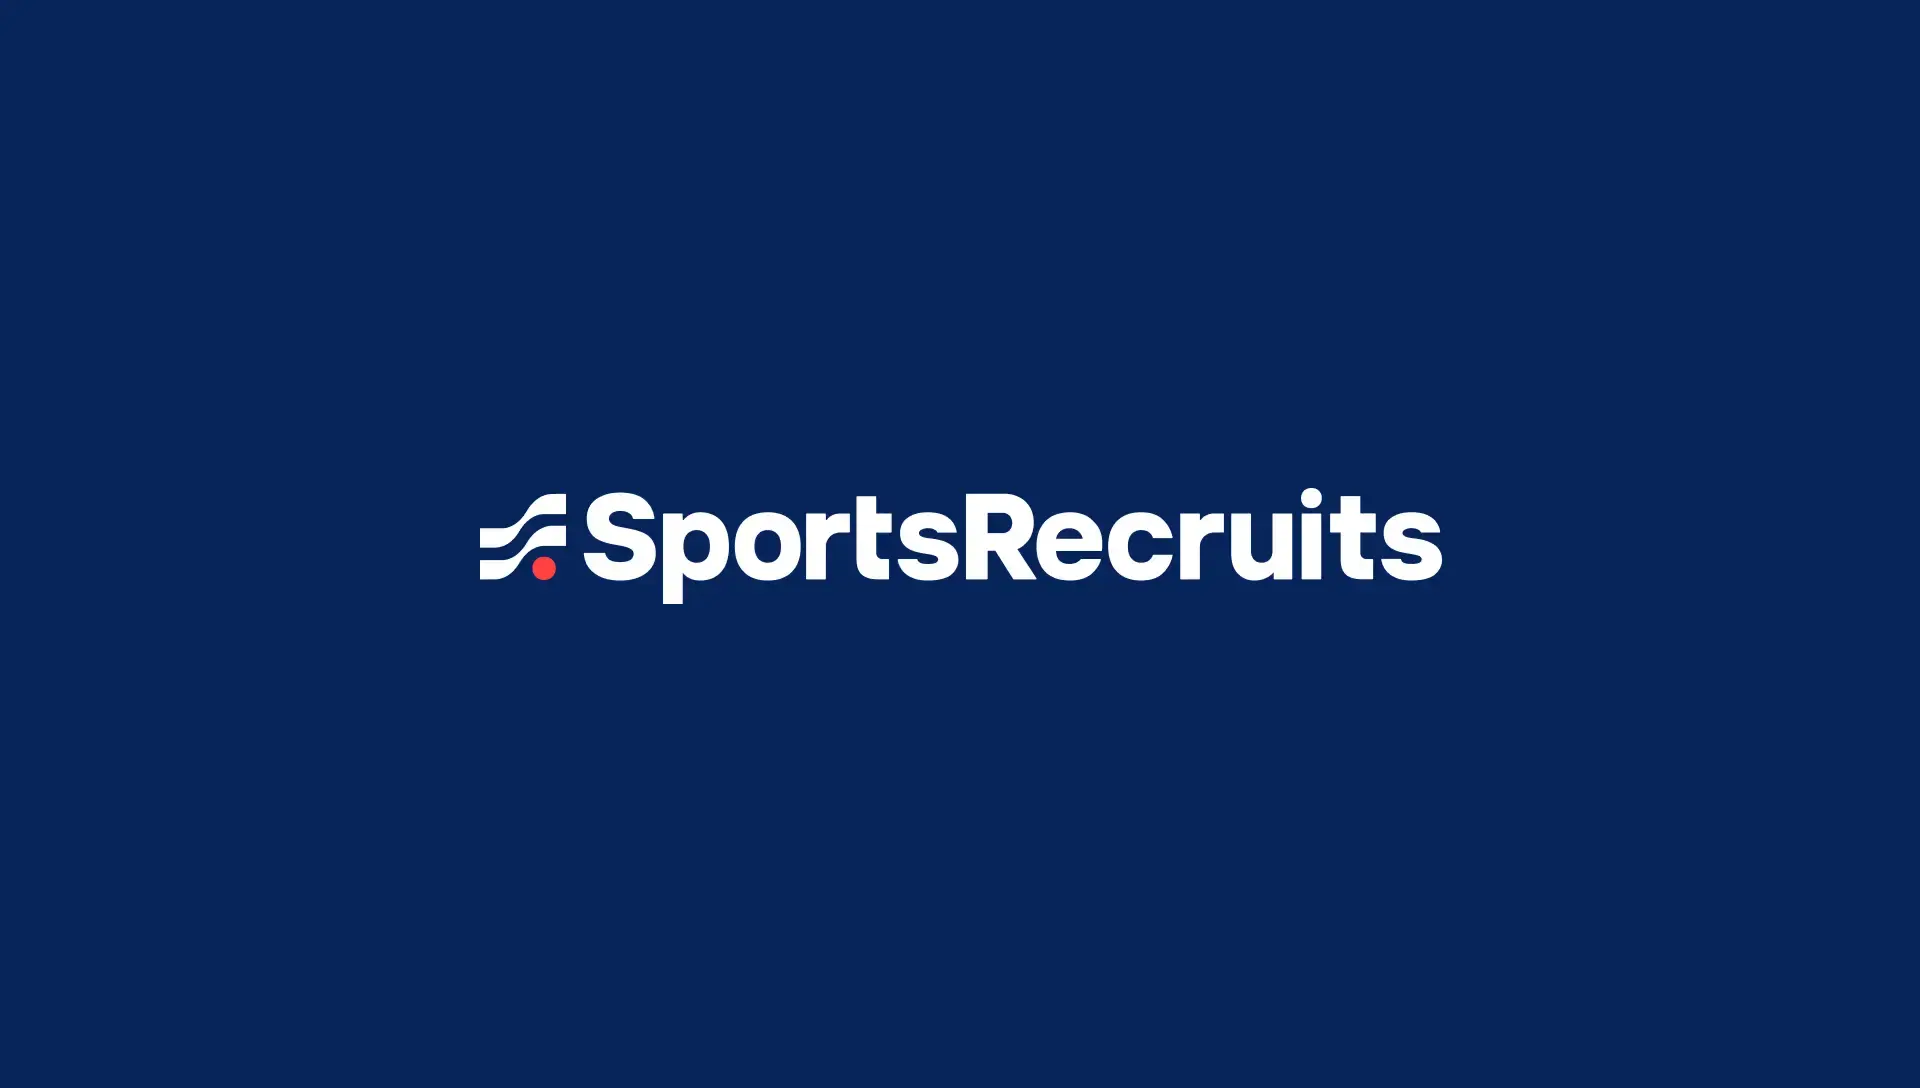 sportsrecruits.com